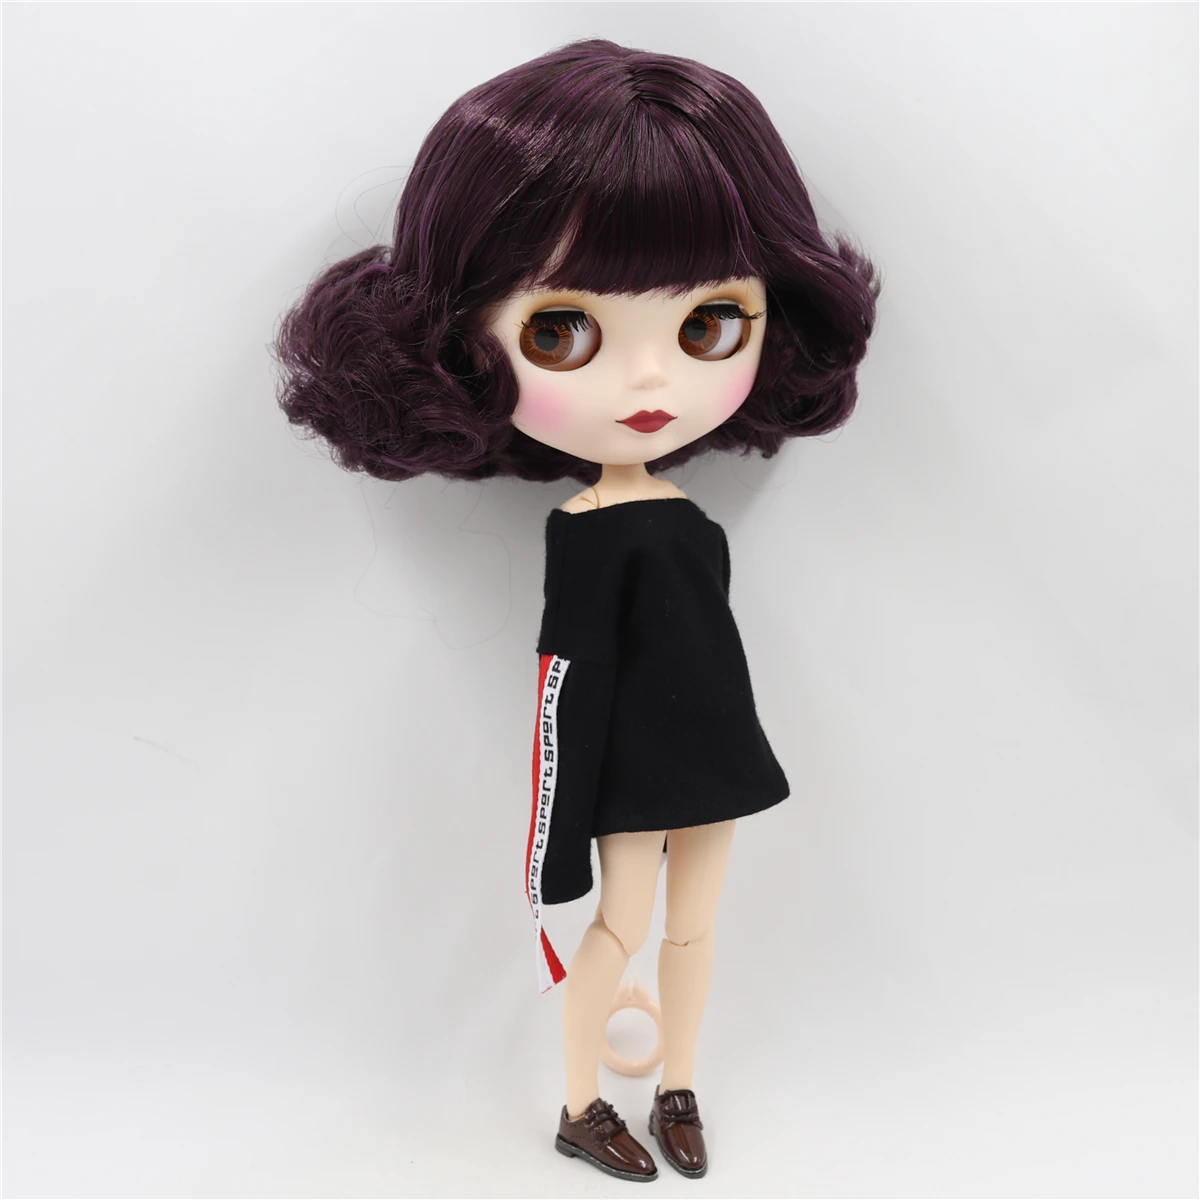 Neo Blythe Boneca com cabelo roxo, pele branca, rosto fofo fosco e Custom Corpo Articulado 2